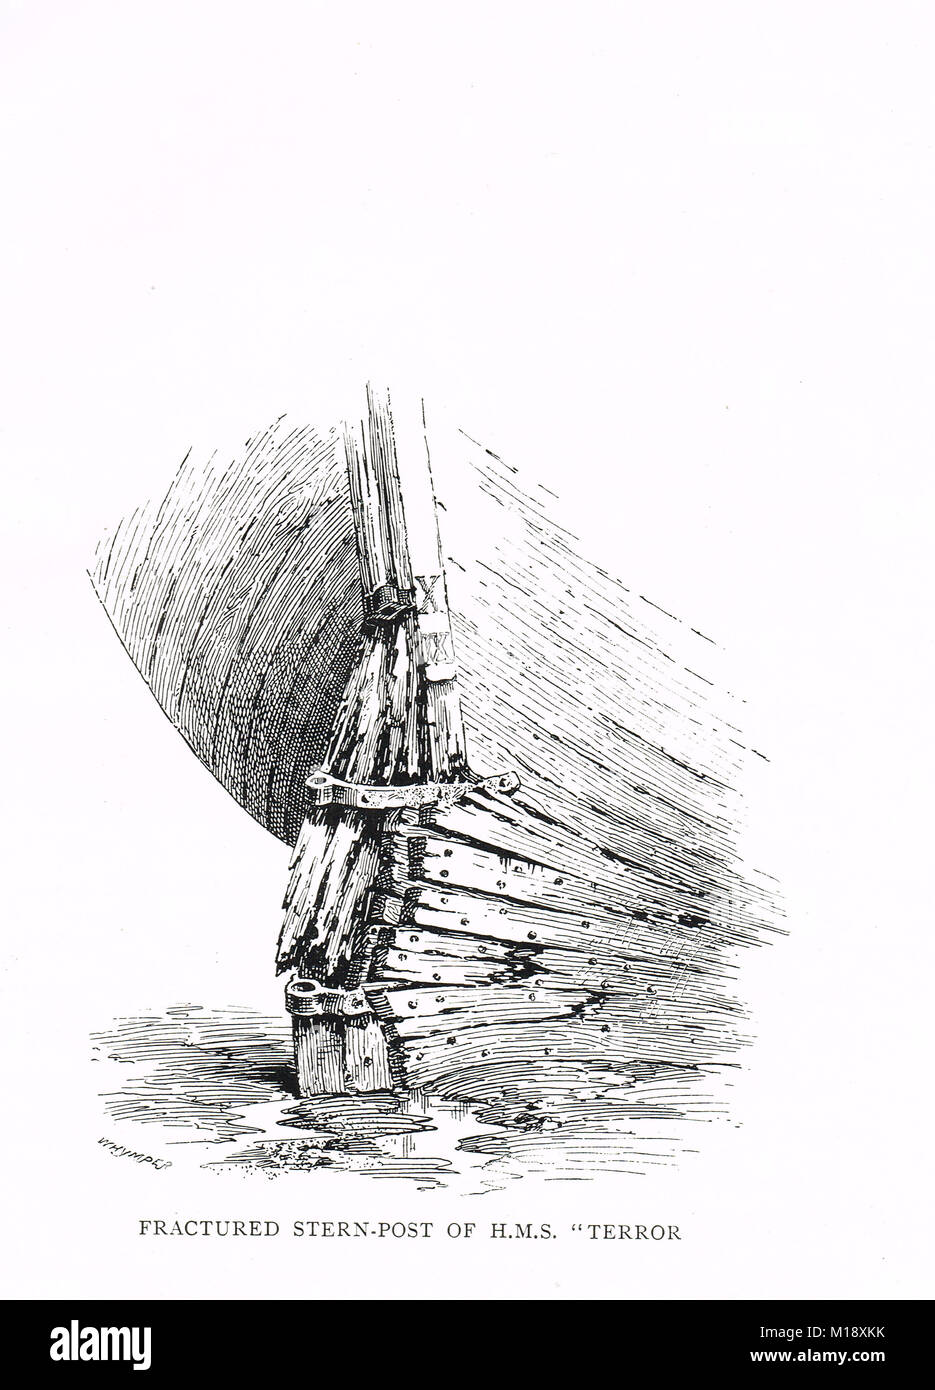 Zerbrochenen stern Post von HMS Terror, vom Eis eingeschlossen. Kapitän George zurück Arctic Expedition in die Hudson Bay, 1836-1837 Stockfoto